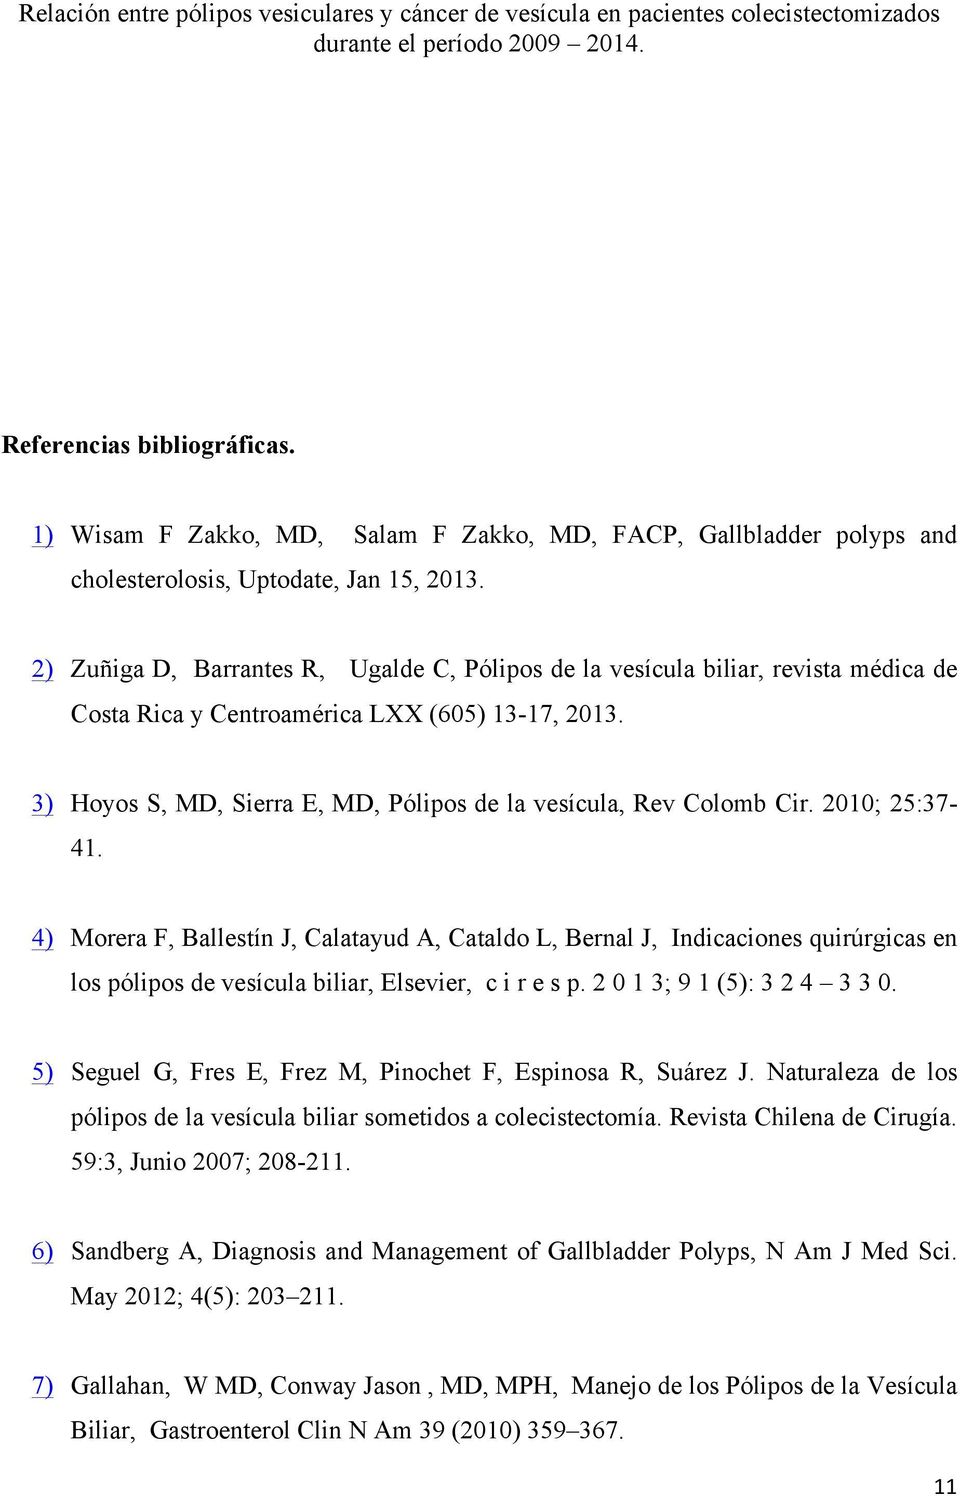 3) Hoyos S, MD, Sierra E, MD, Pólipos de la vesícula, Rev Colomb Cir. 2010; 25:37-41.